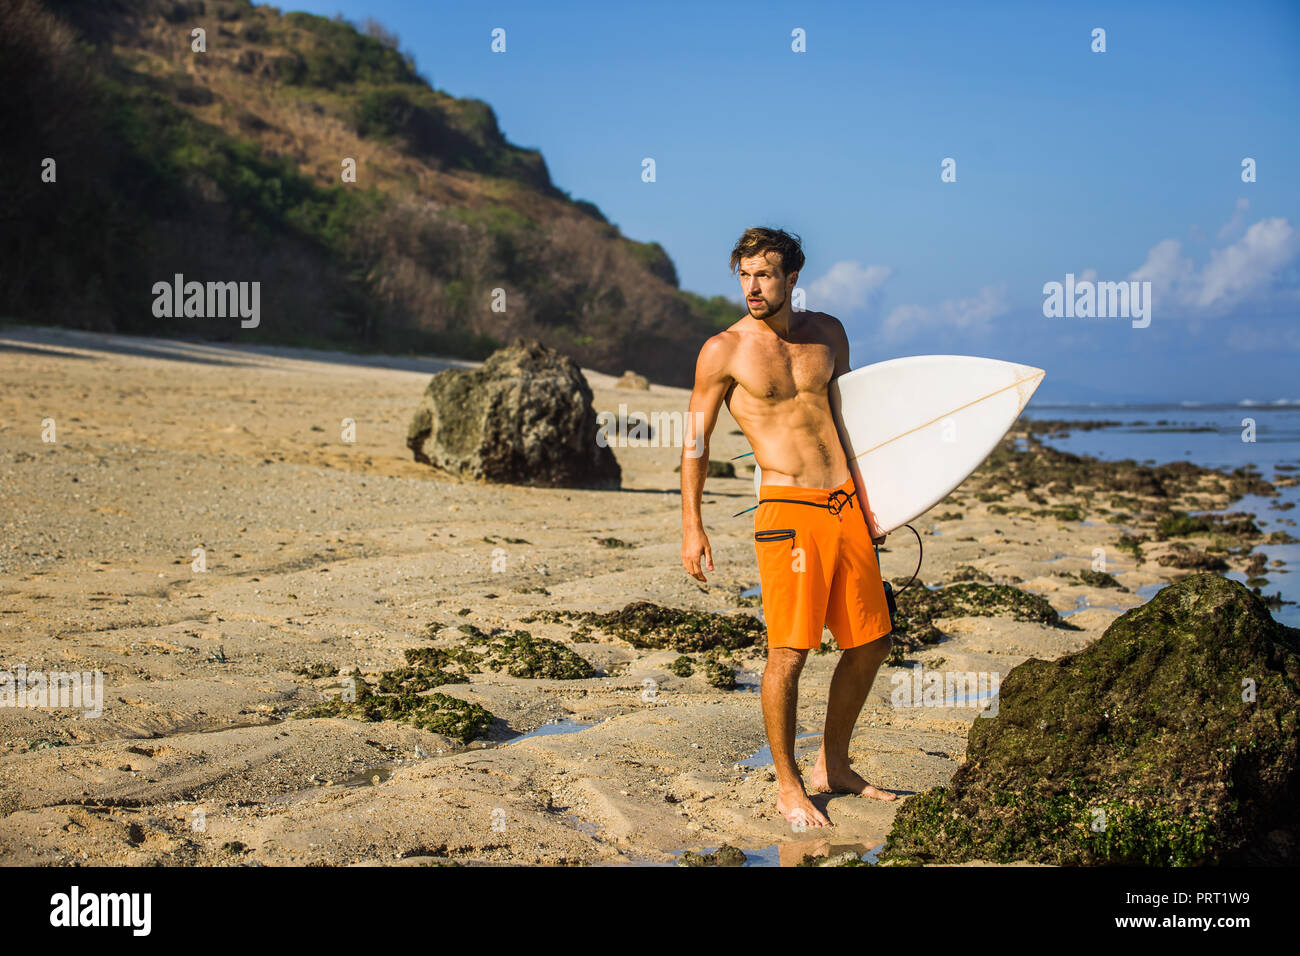 Junge Surfer mit Surfen board stehend auf Sandstrand in der Nähe von Ocean Stockfoto